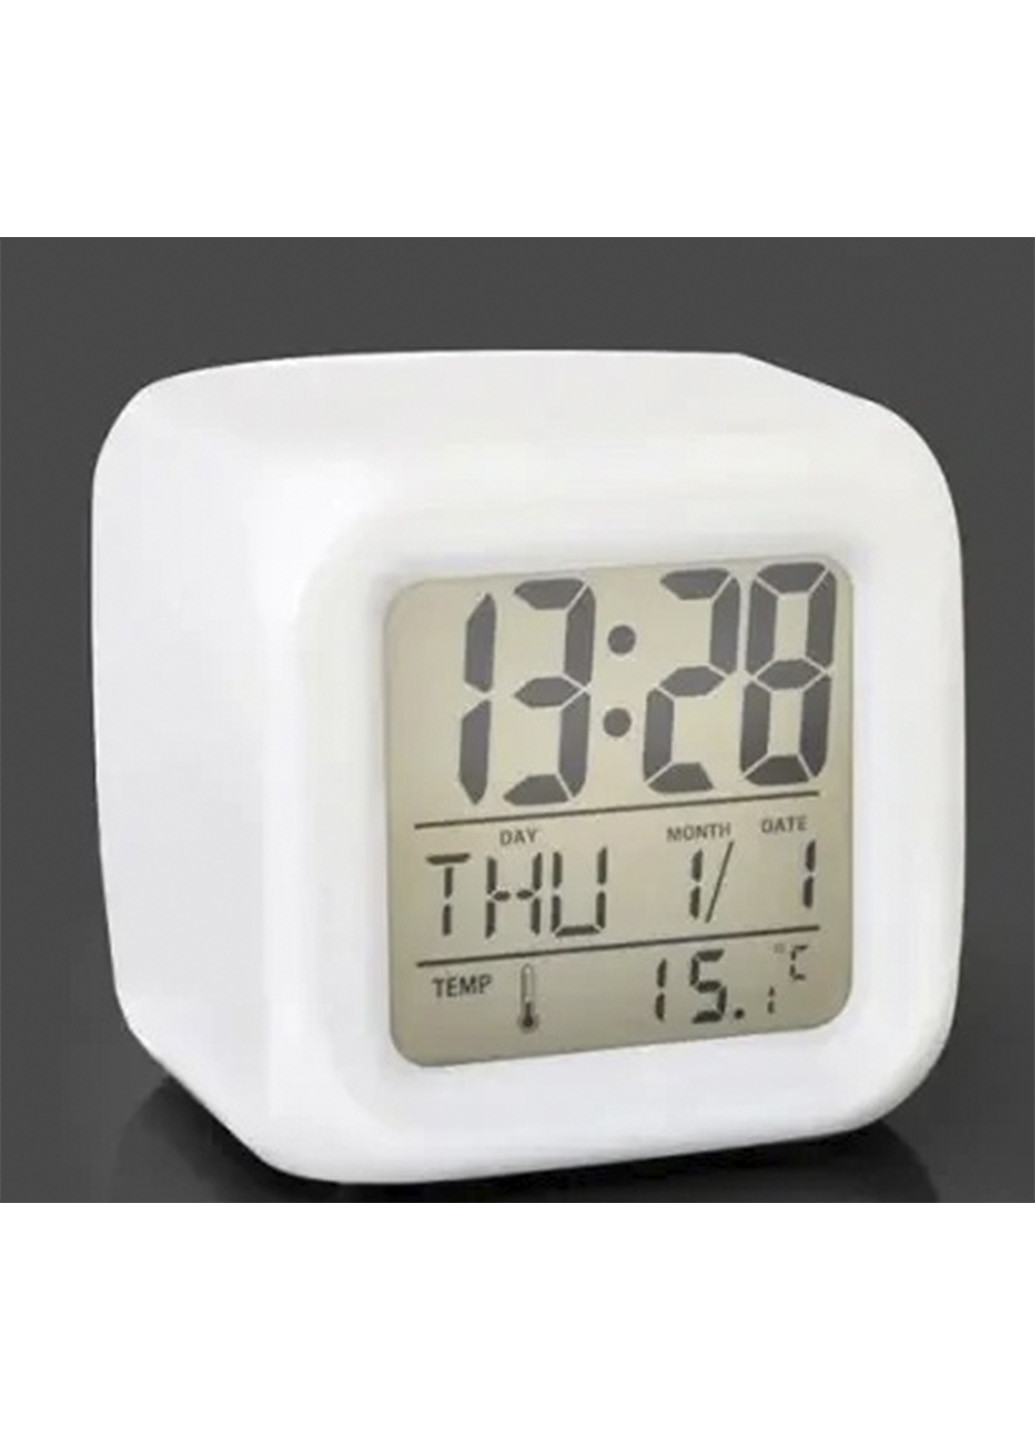 Часы хамелеон CX 508 с термометром будильником и подсветкой Led (255297629)